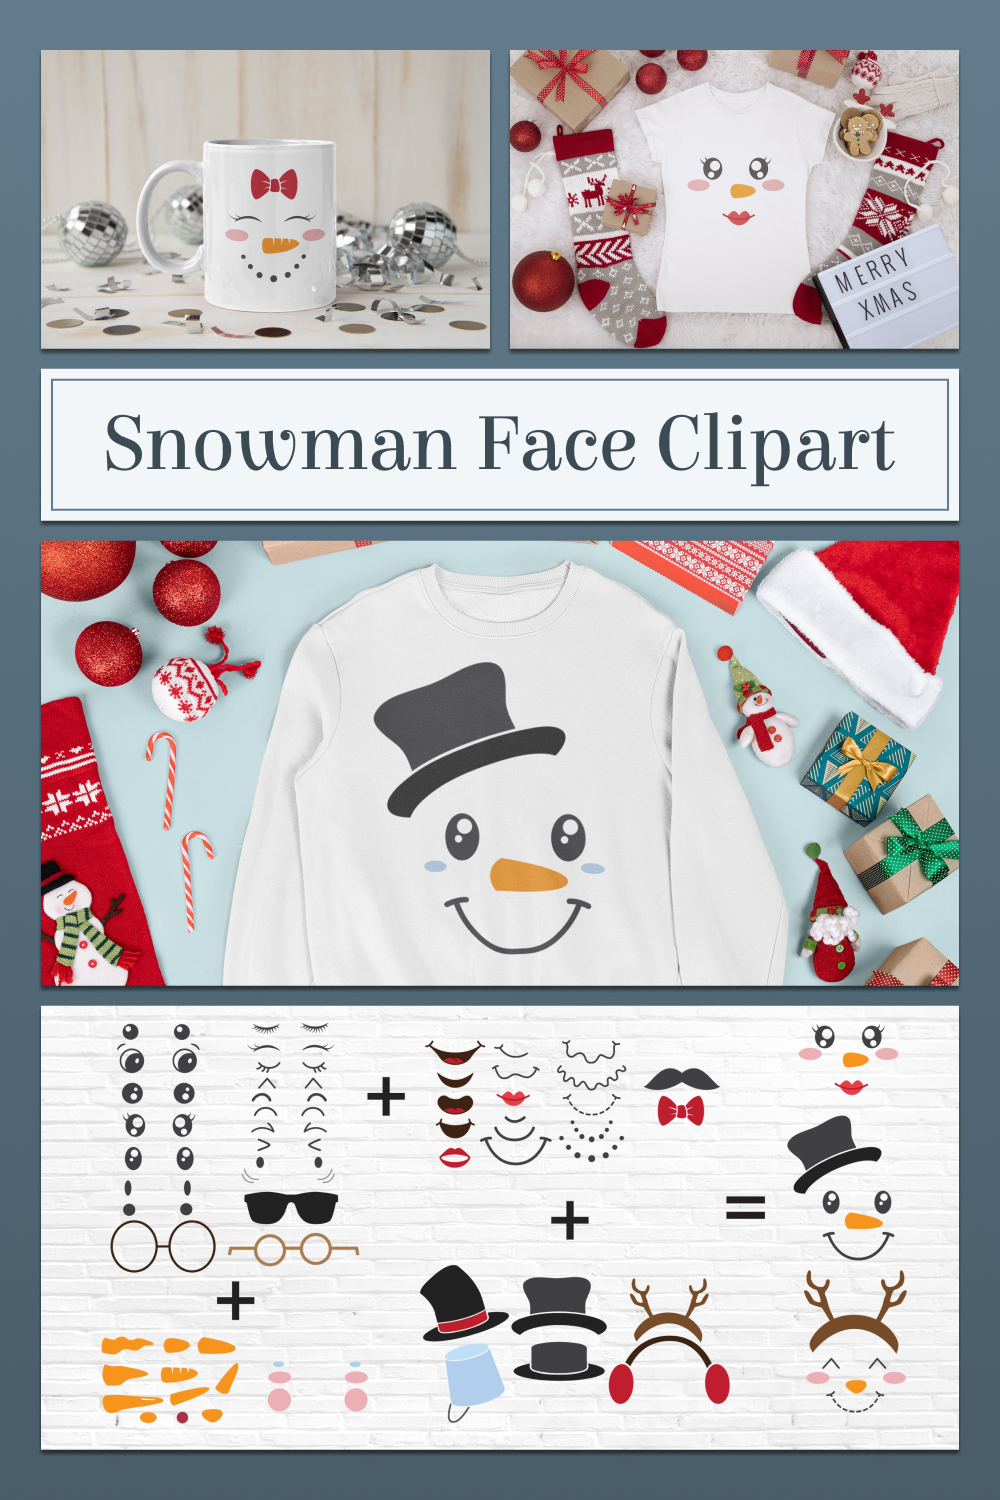 Snowman face clipart of pinterest.